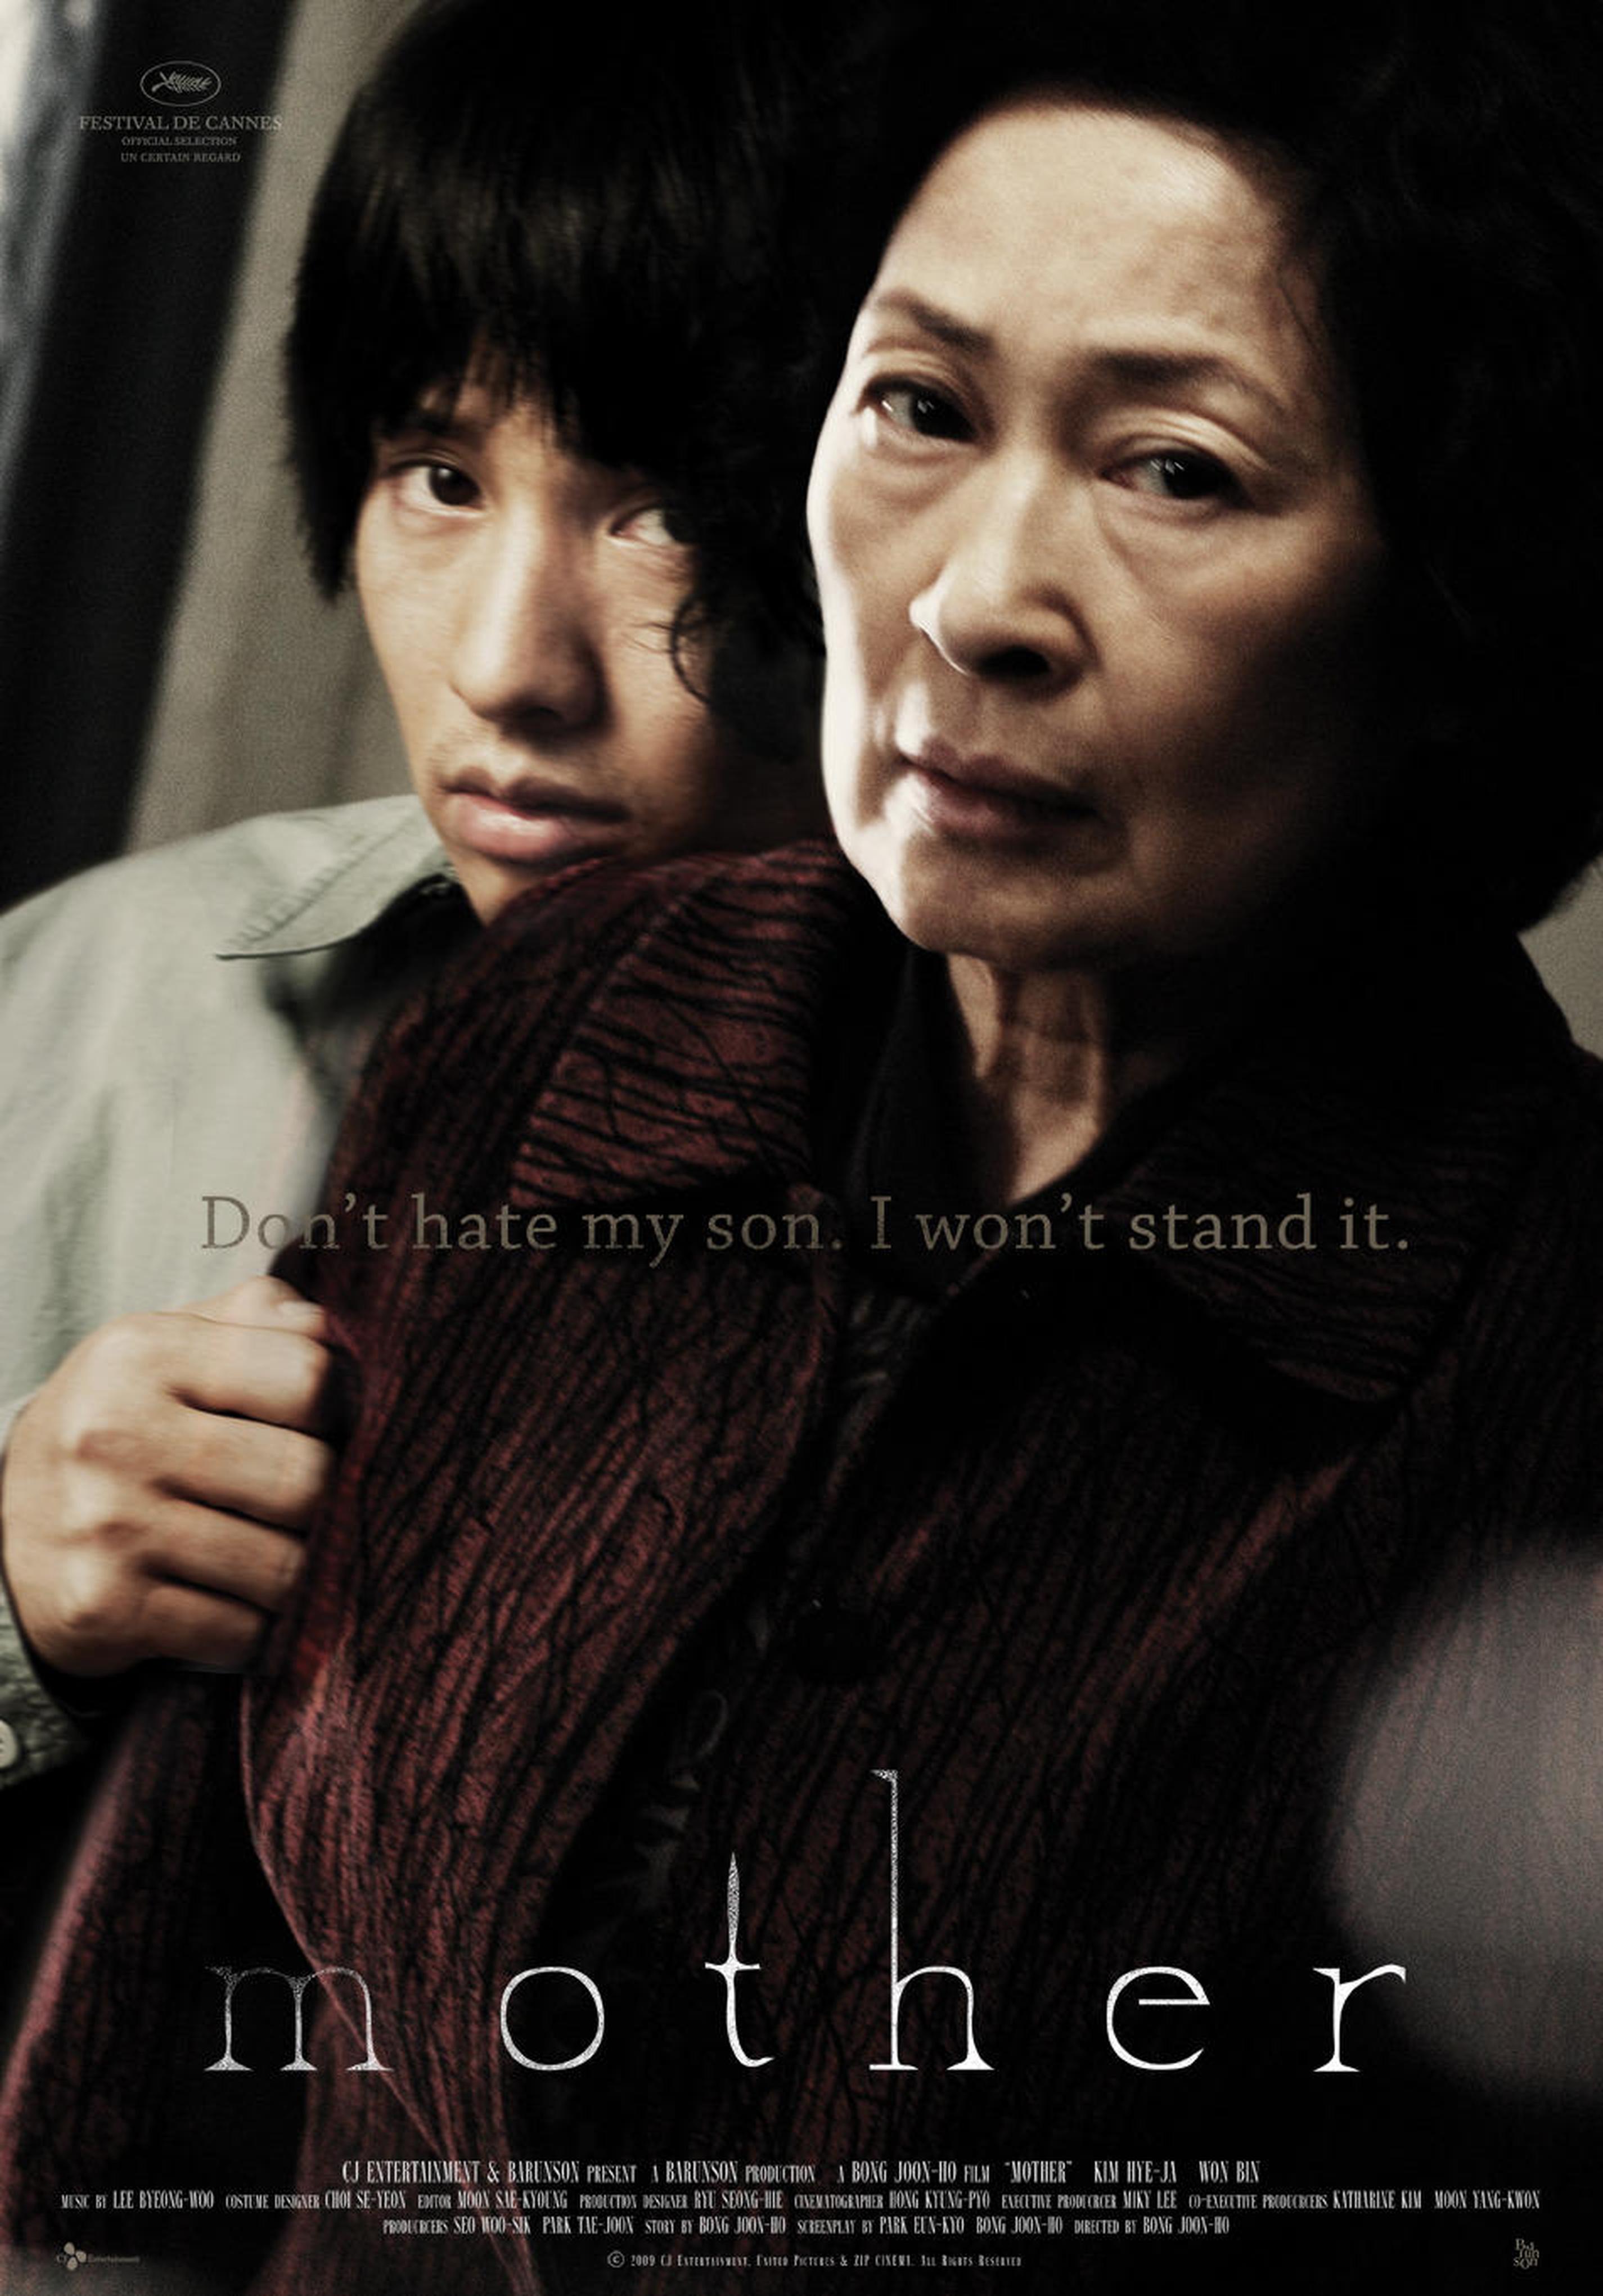 【2000-2010】《母亲》 (2009)导演奉俊昊。入围第62届戛纳电影节一种关注单元。